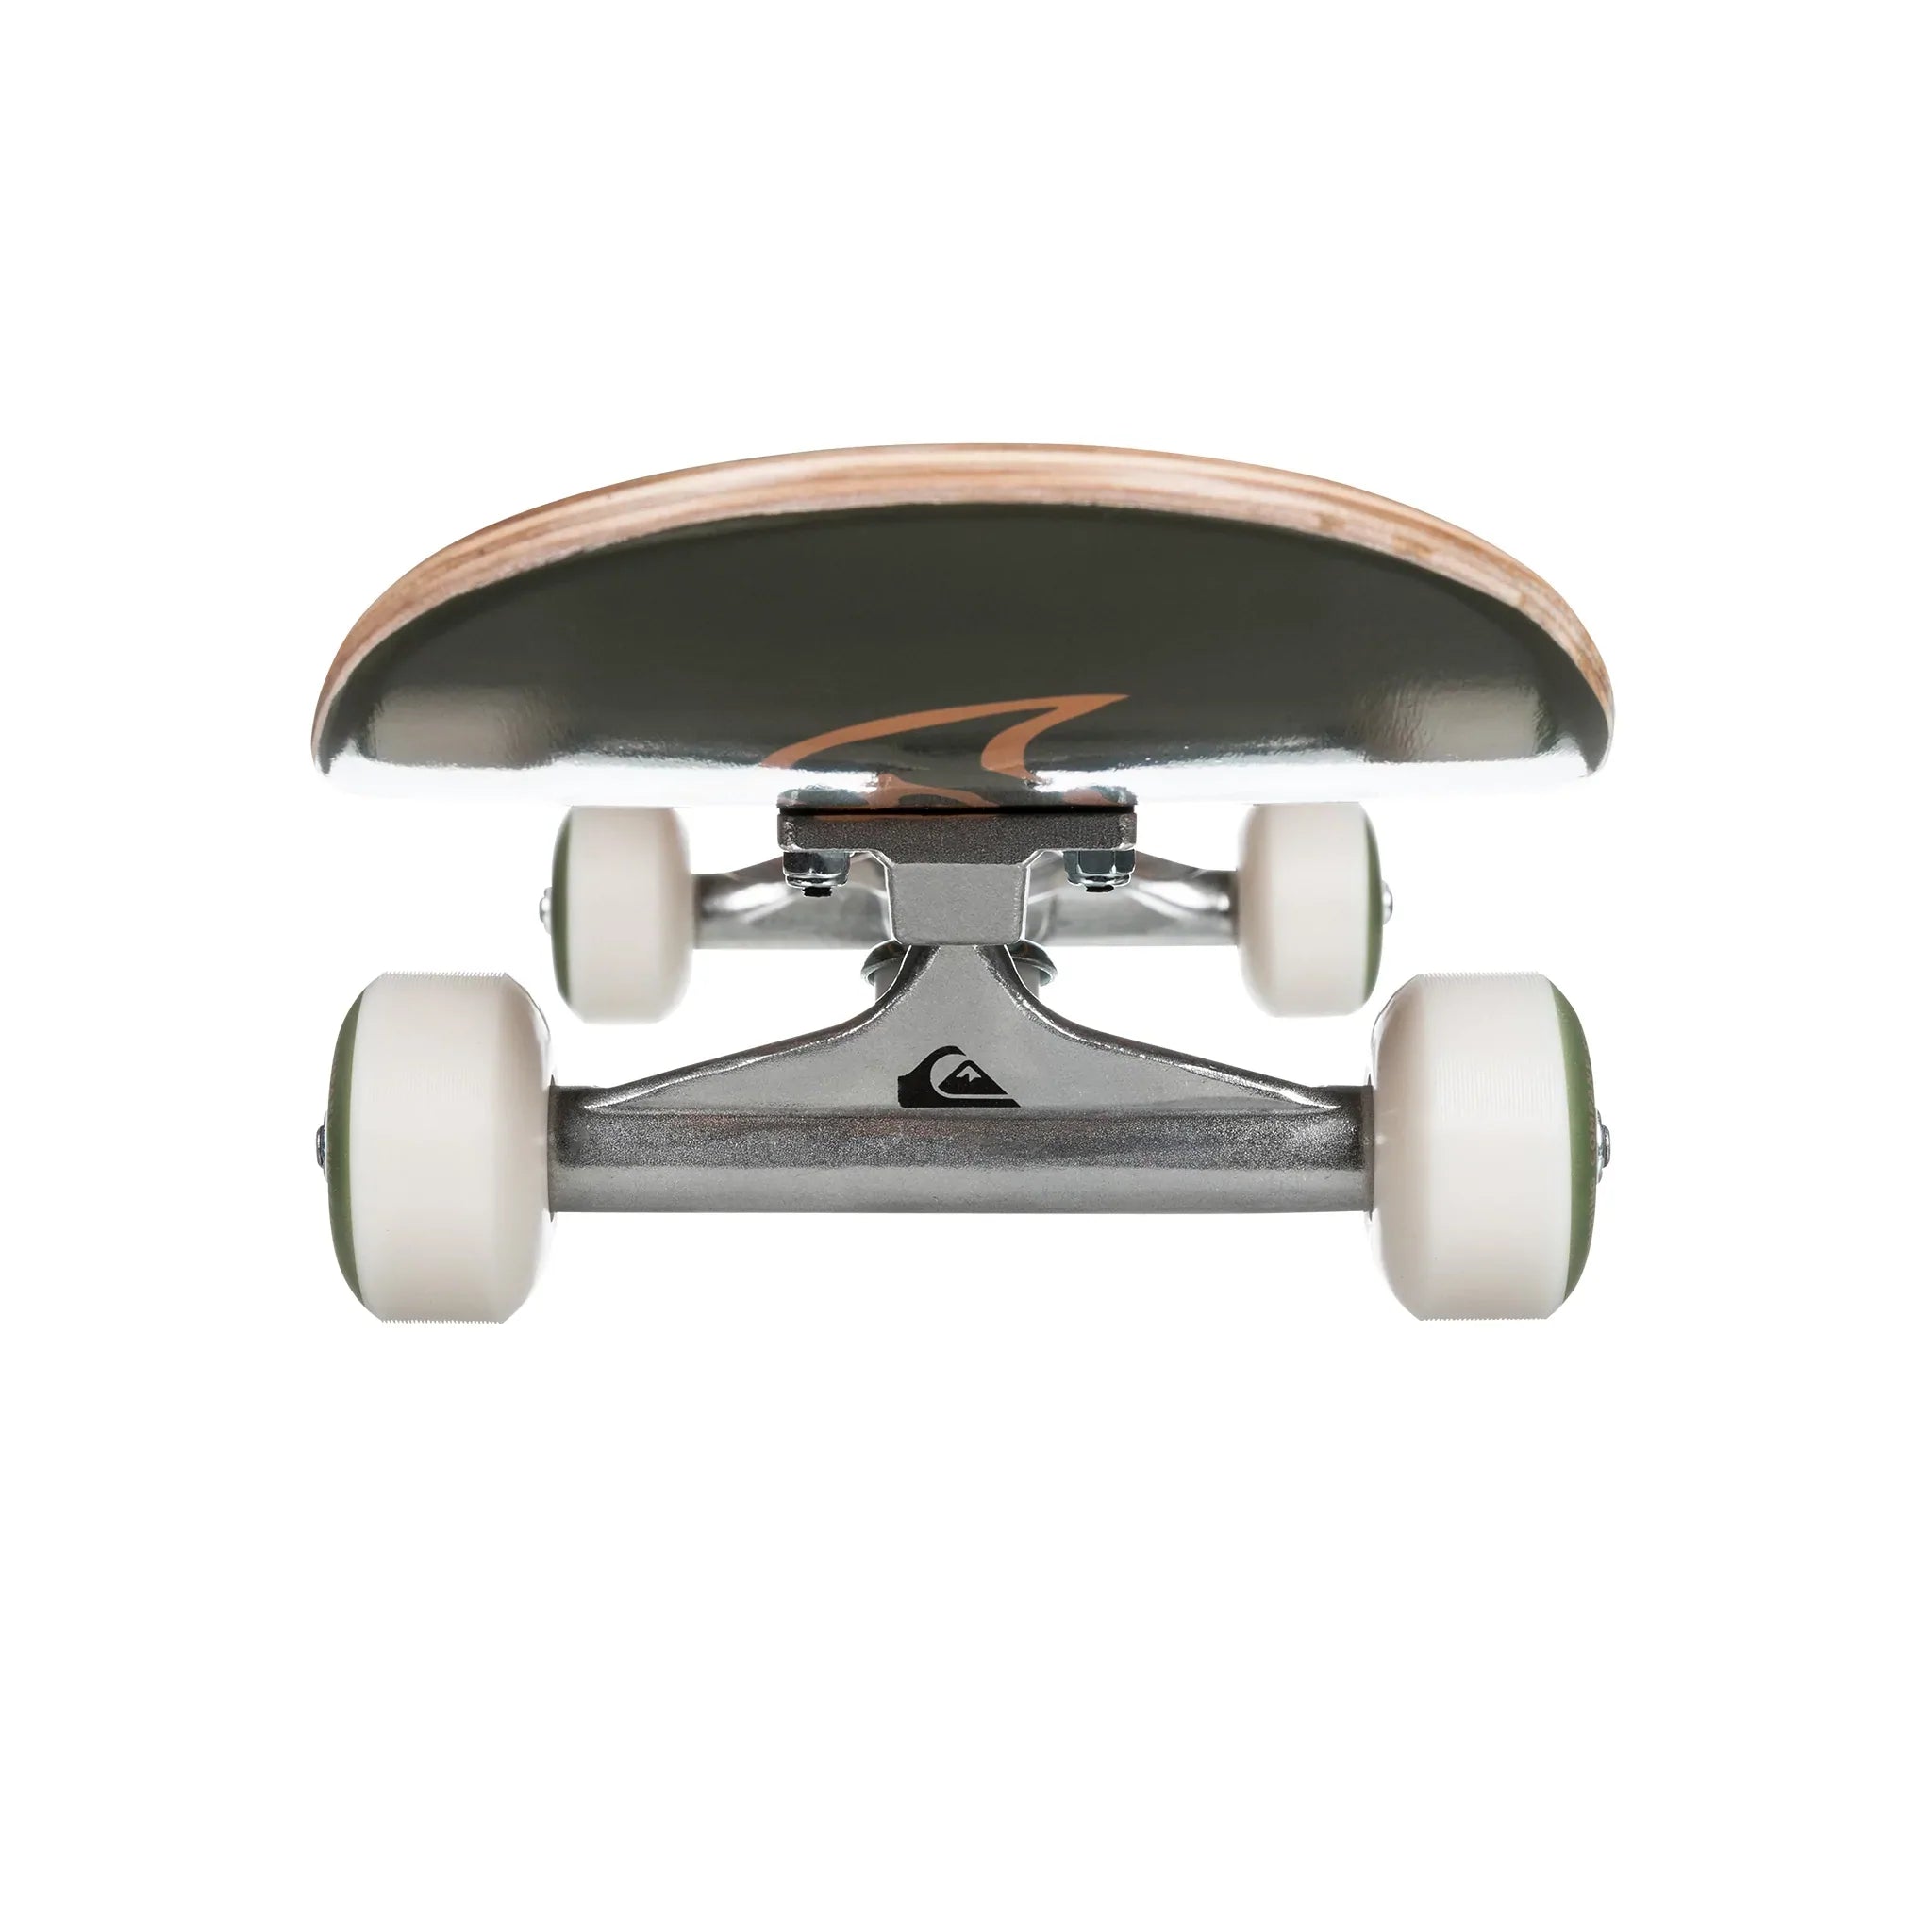 Quiksilver Flaming Skateboard - Green Camo - 8.25"